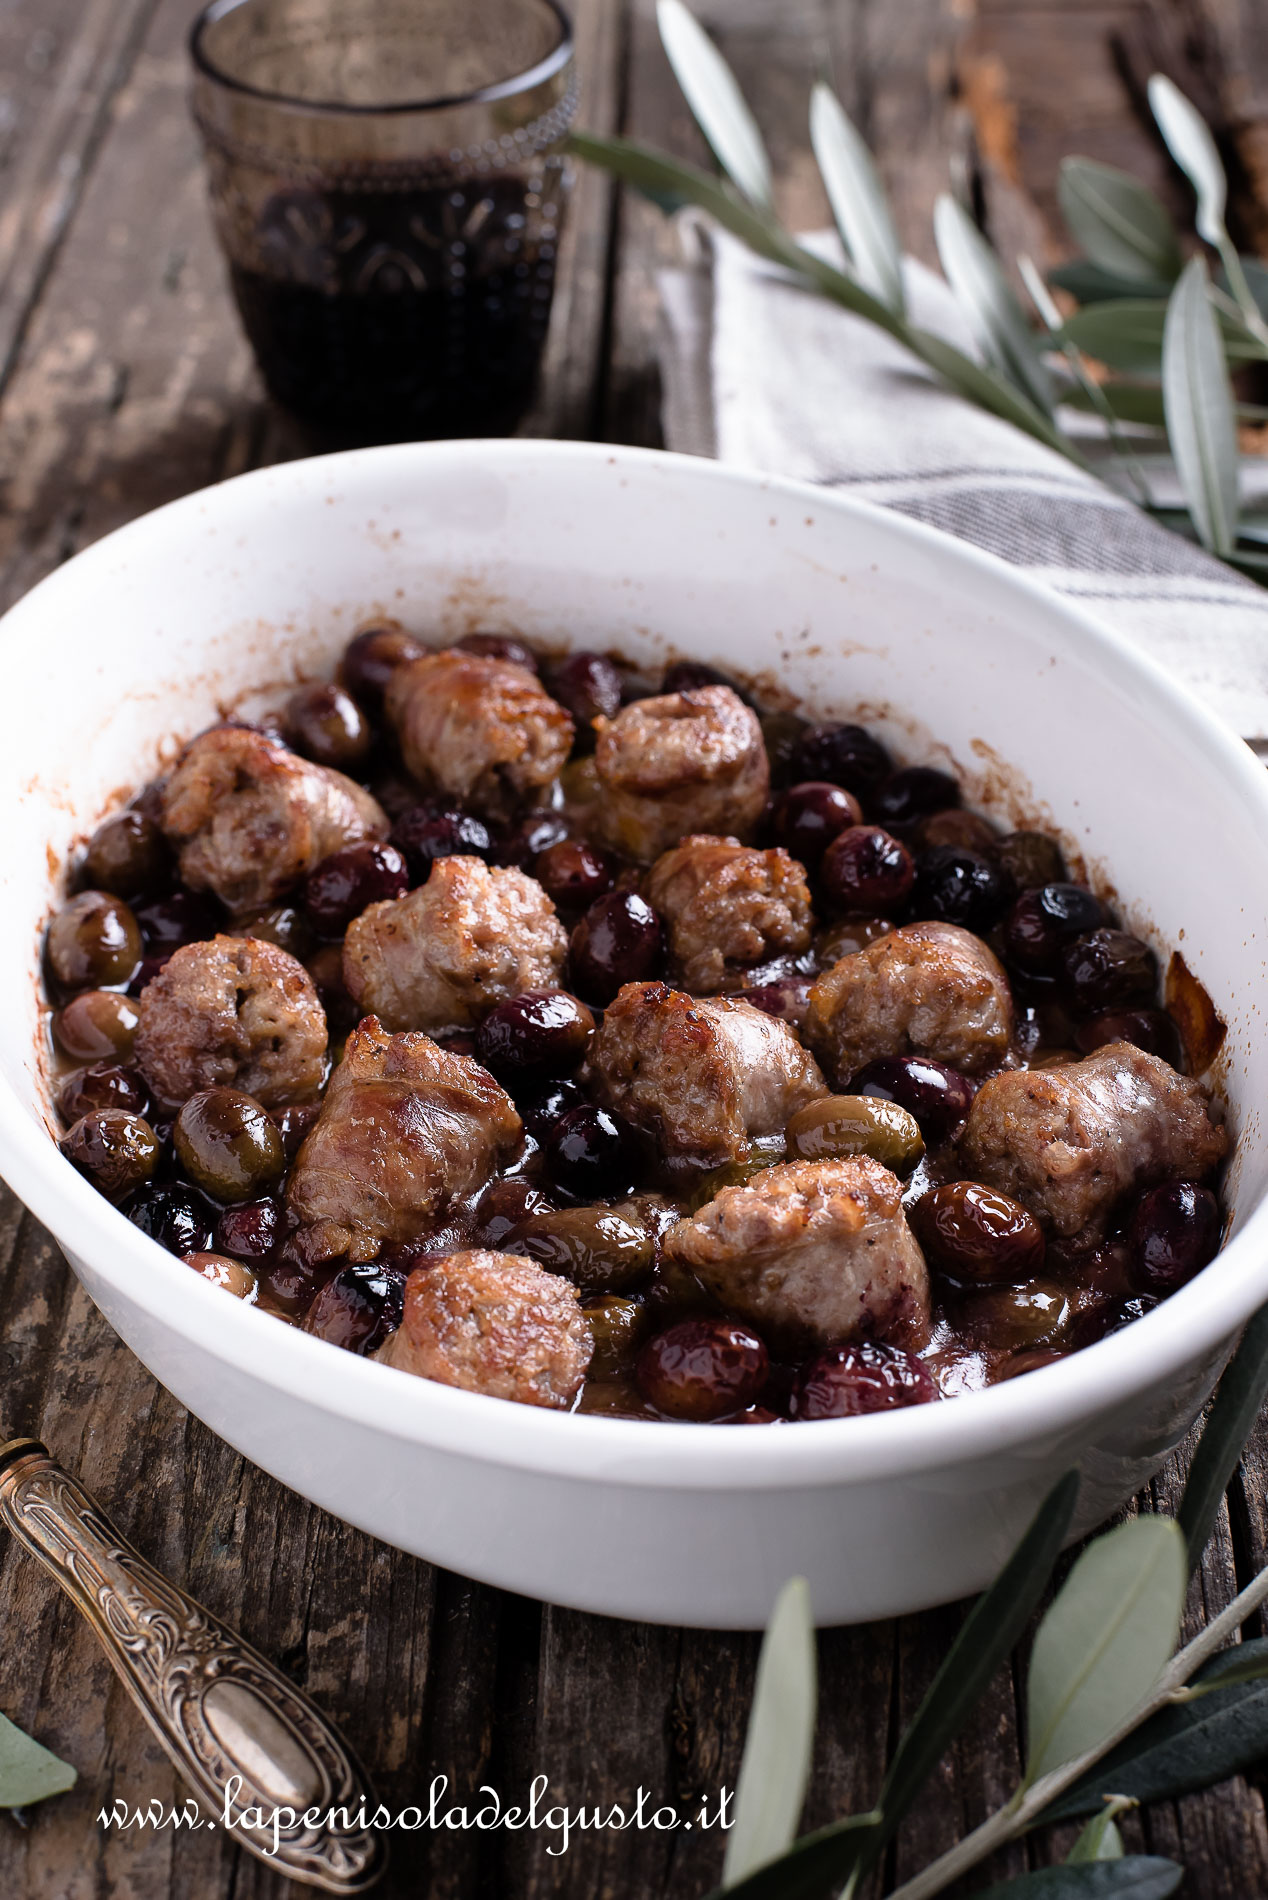 ricetta salsicce con olive nere in umido e rosolate in forno buonissime piatto contadino autunnale con olive fresche